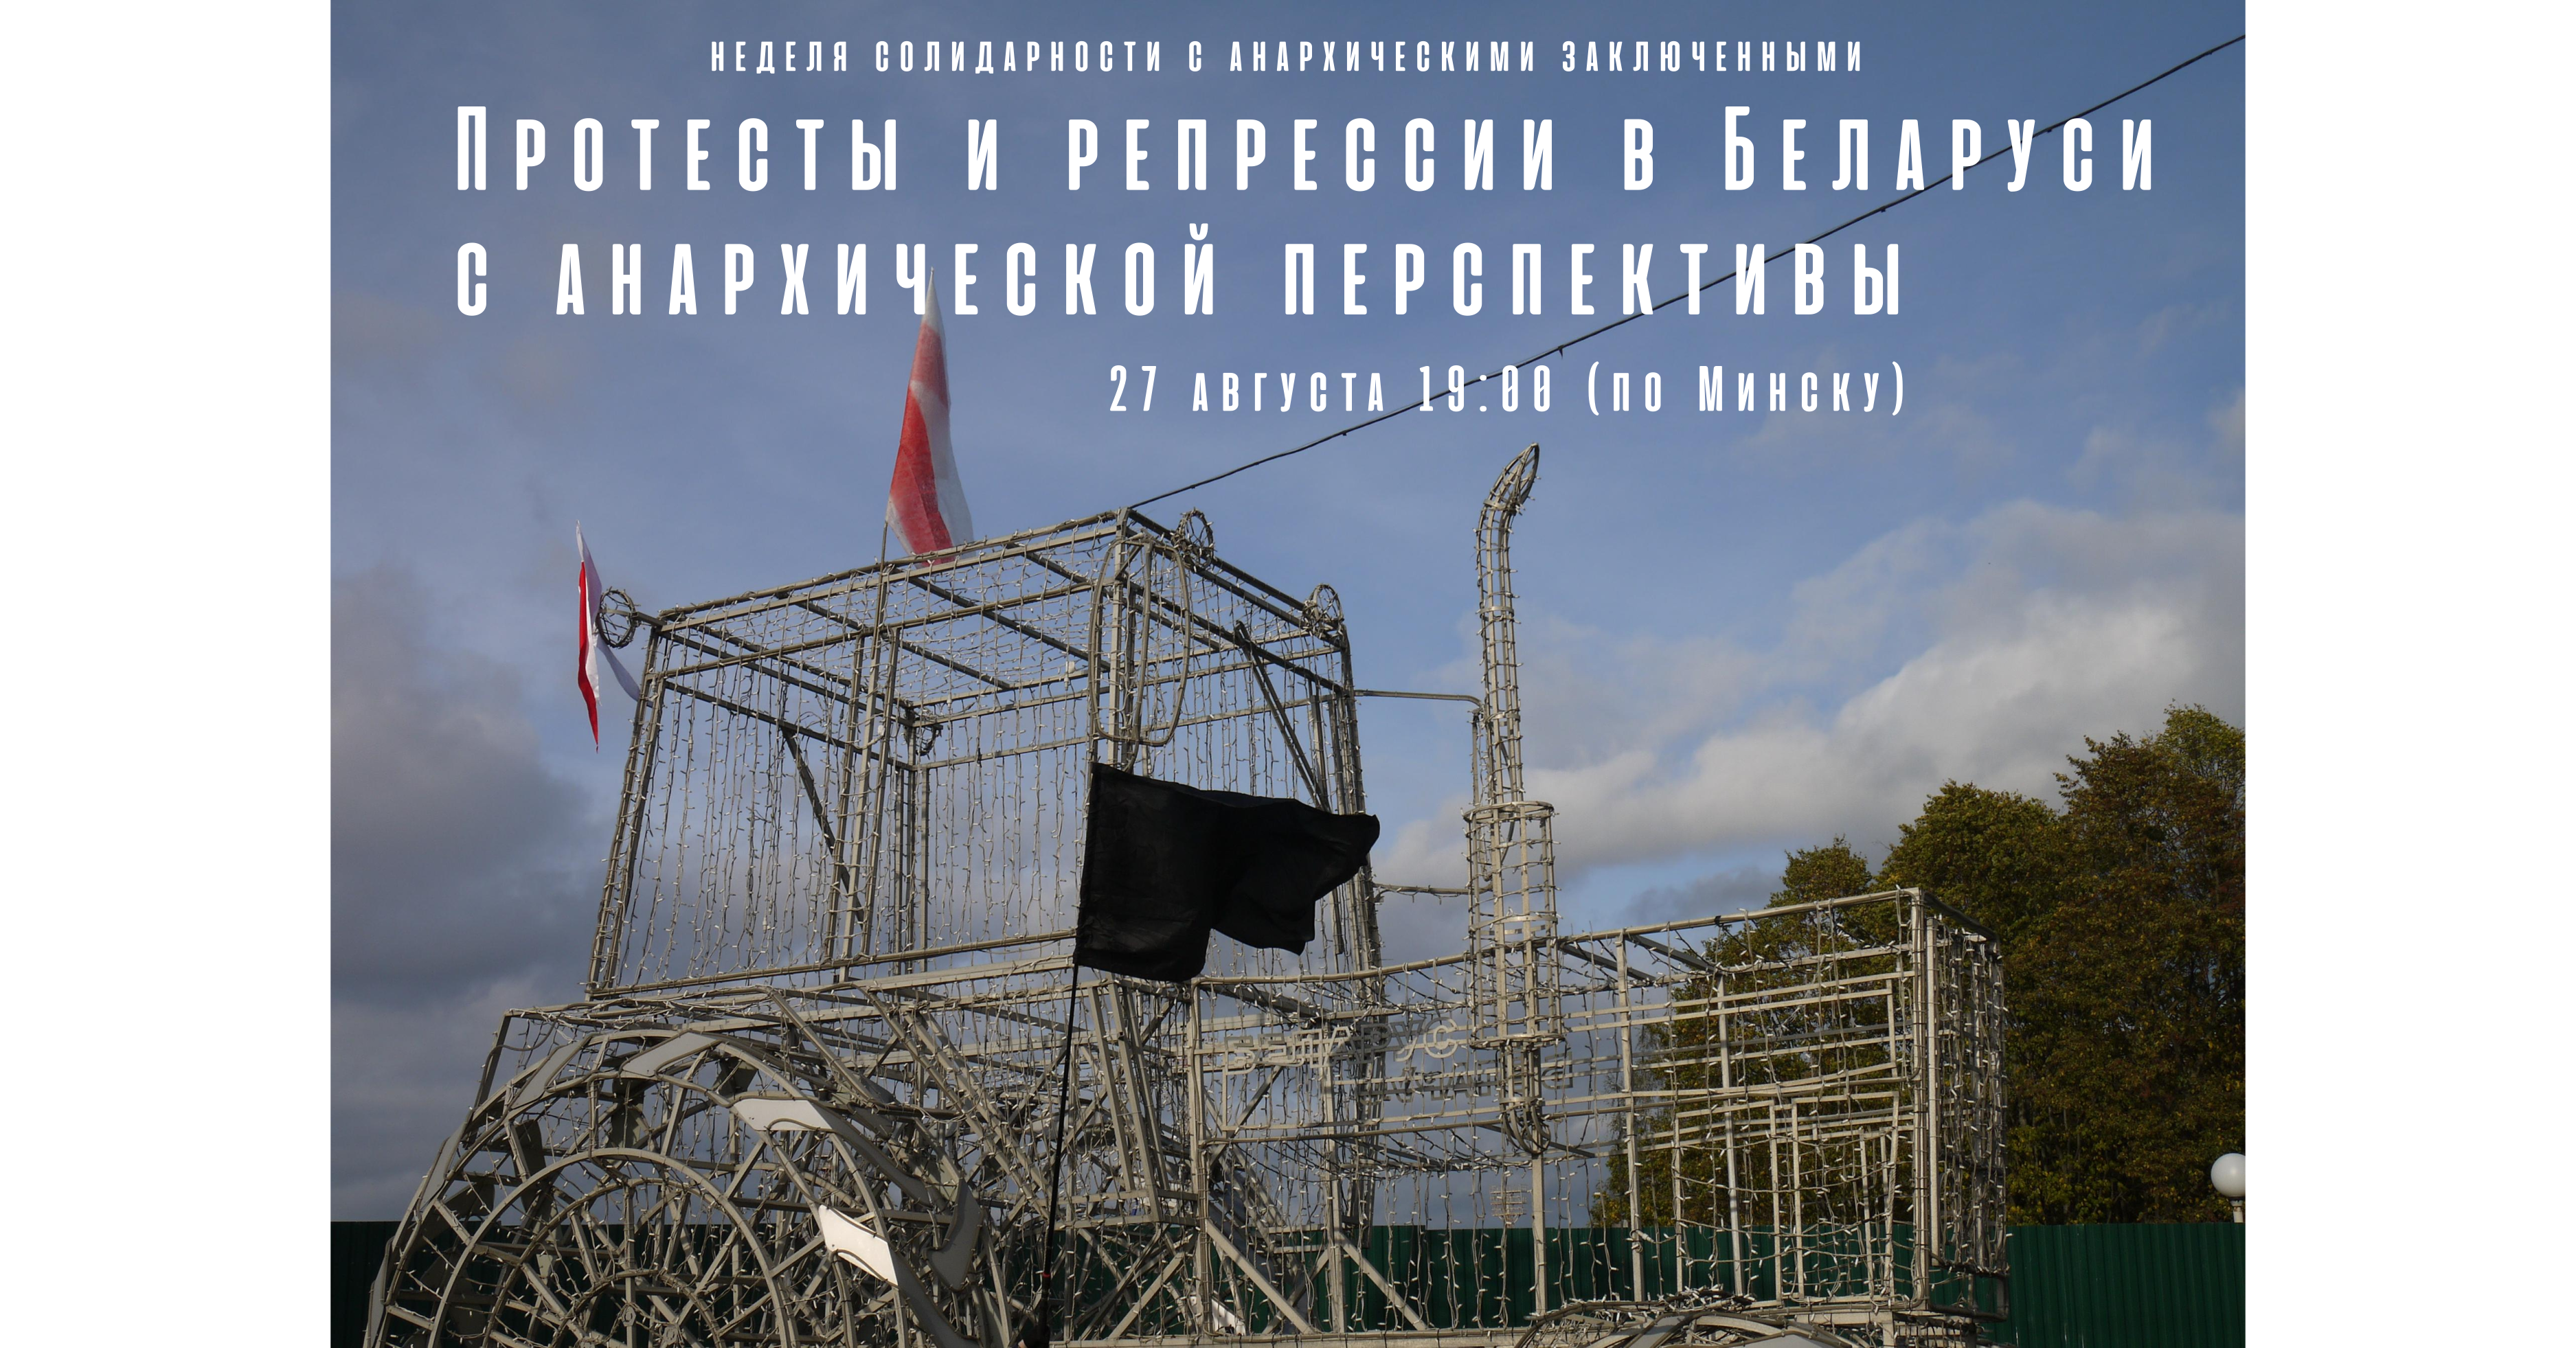 Онлайн презентация «Протесты и репрессии в Беларуси с анархической перспективы» — 27 августа 19:00 (по Минску)